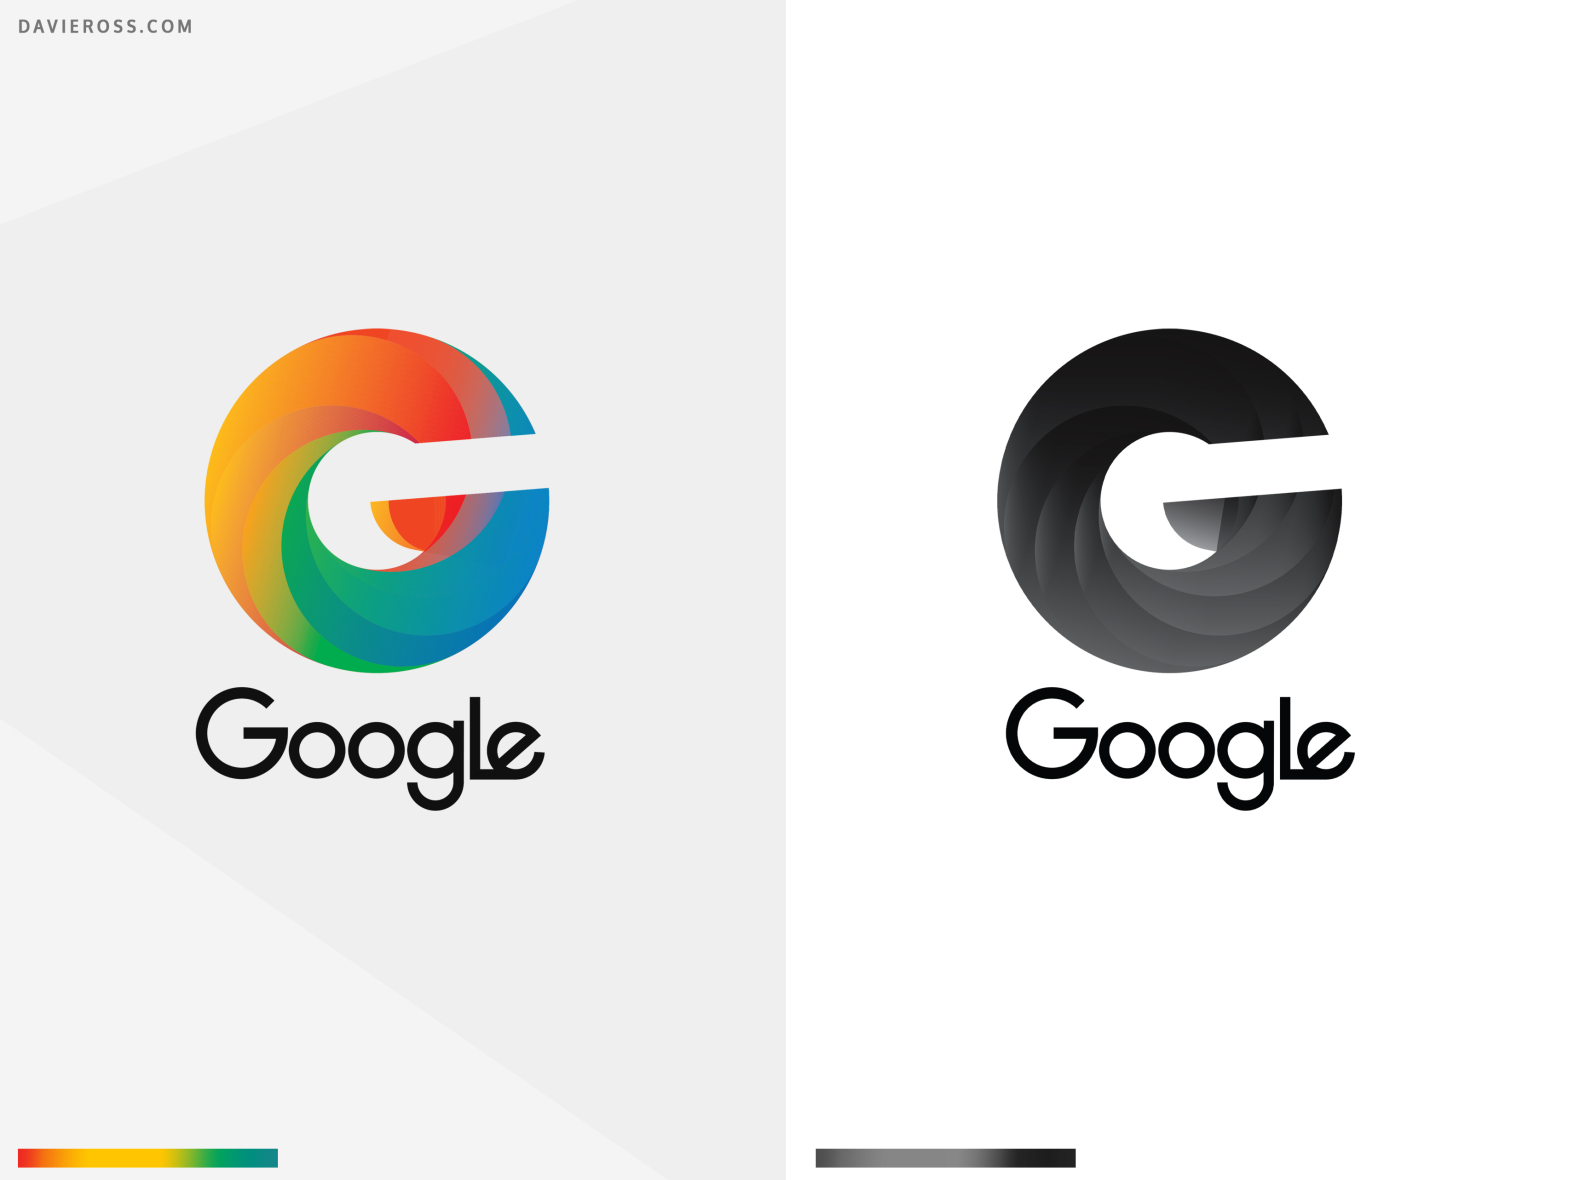 Google Logo Redesign by Davie Ross on Dribbble